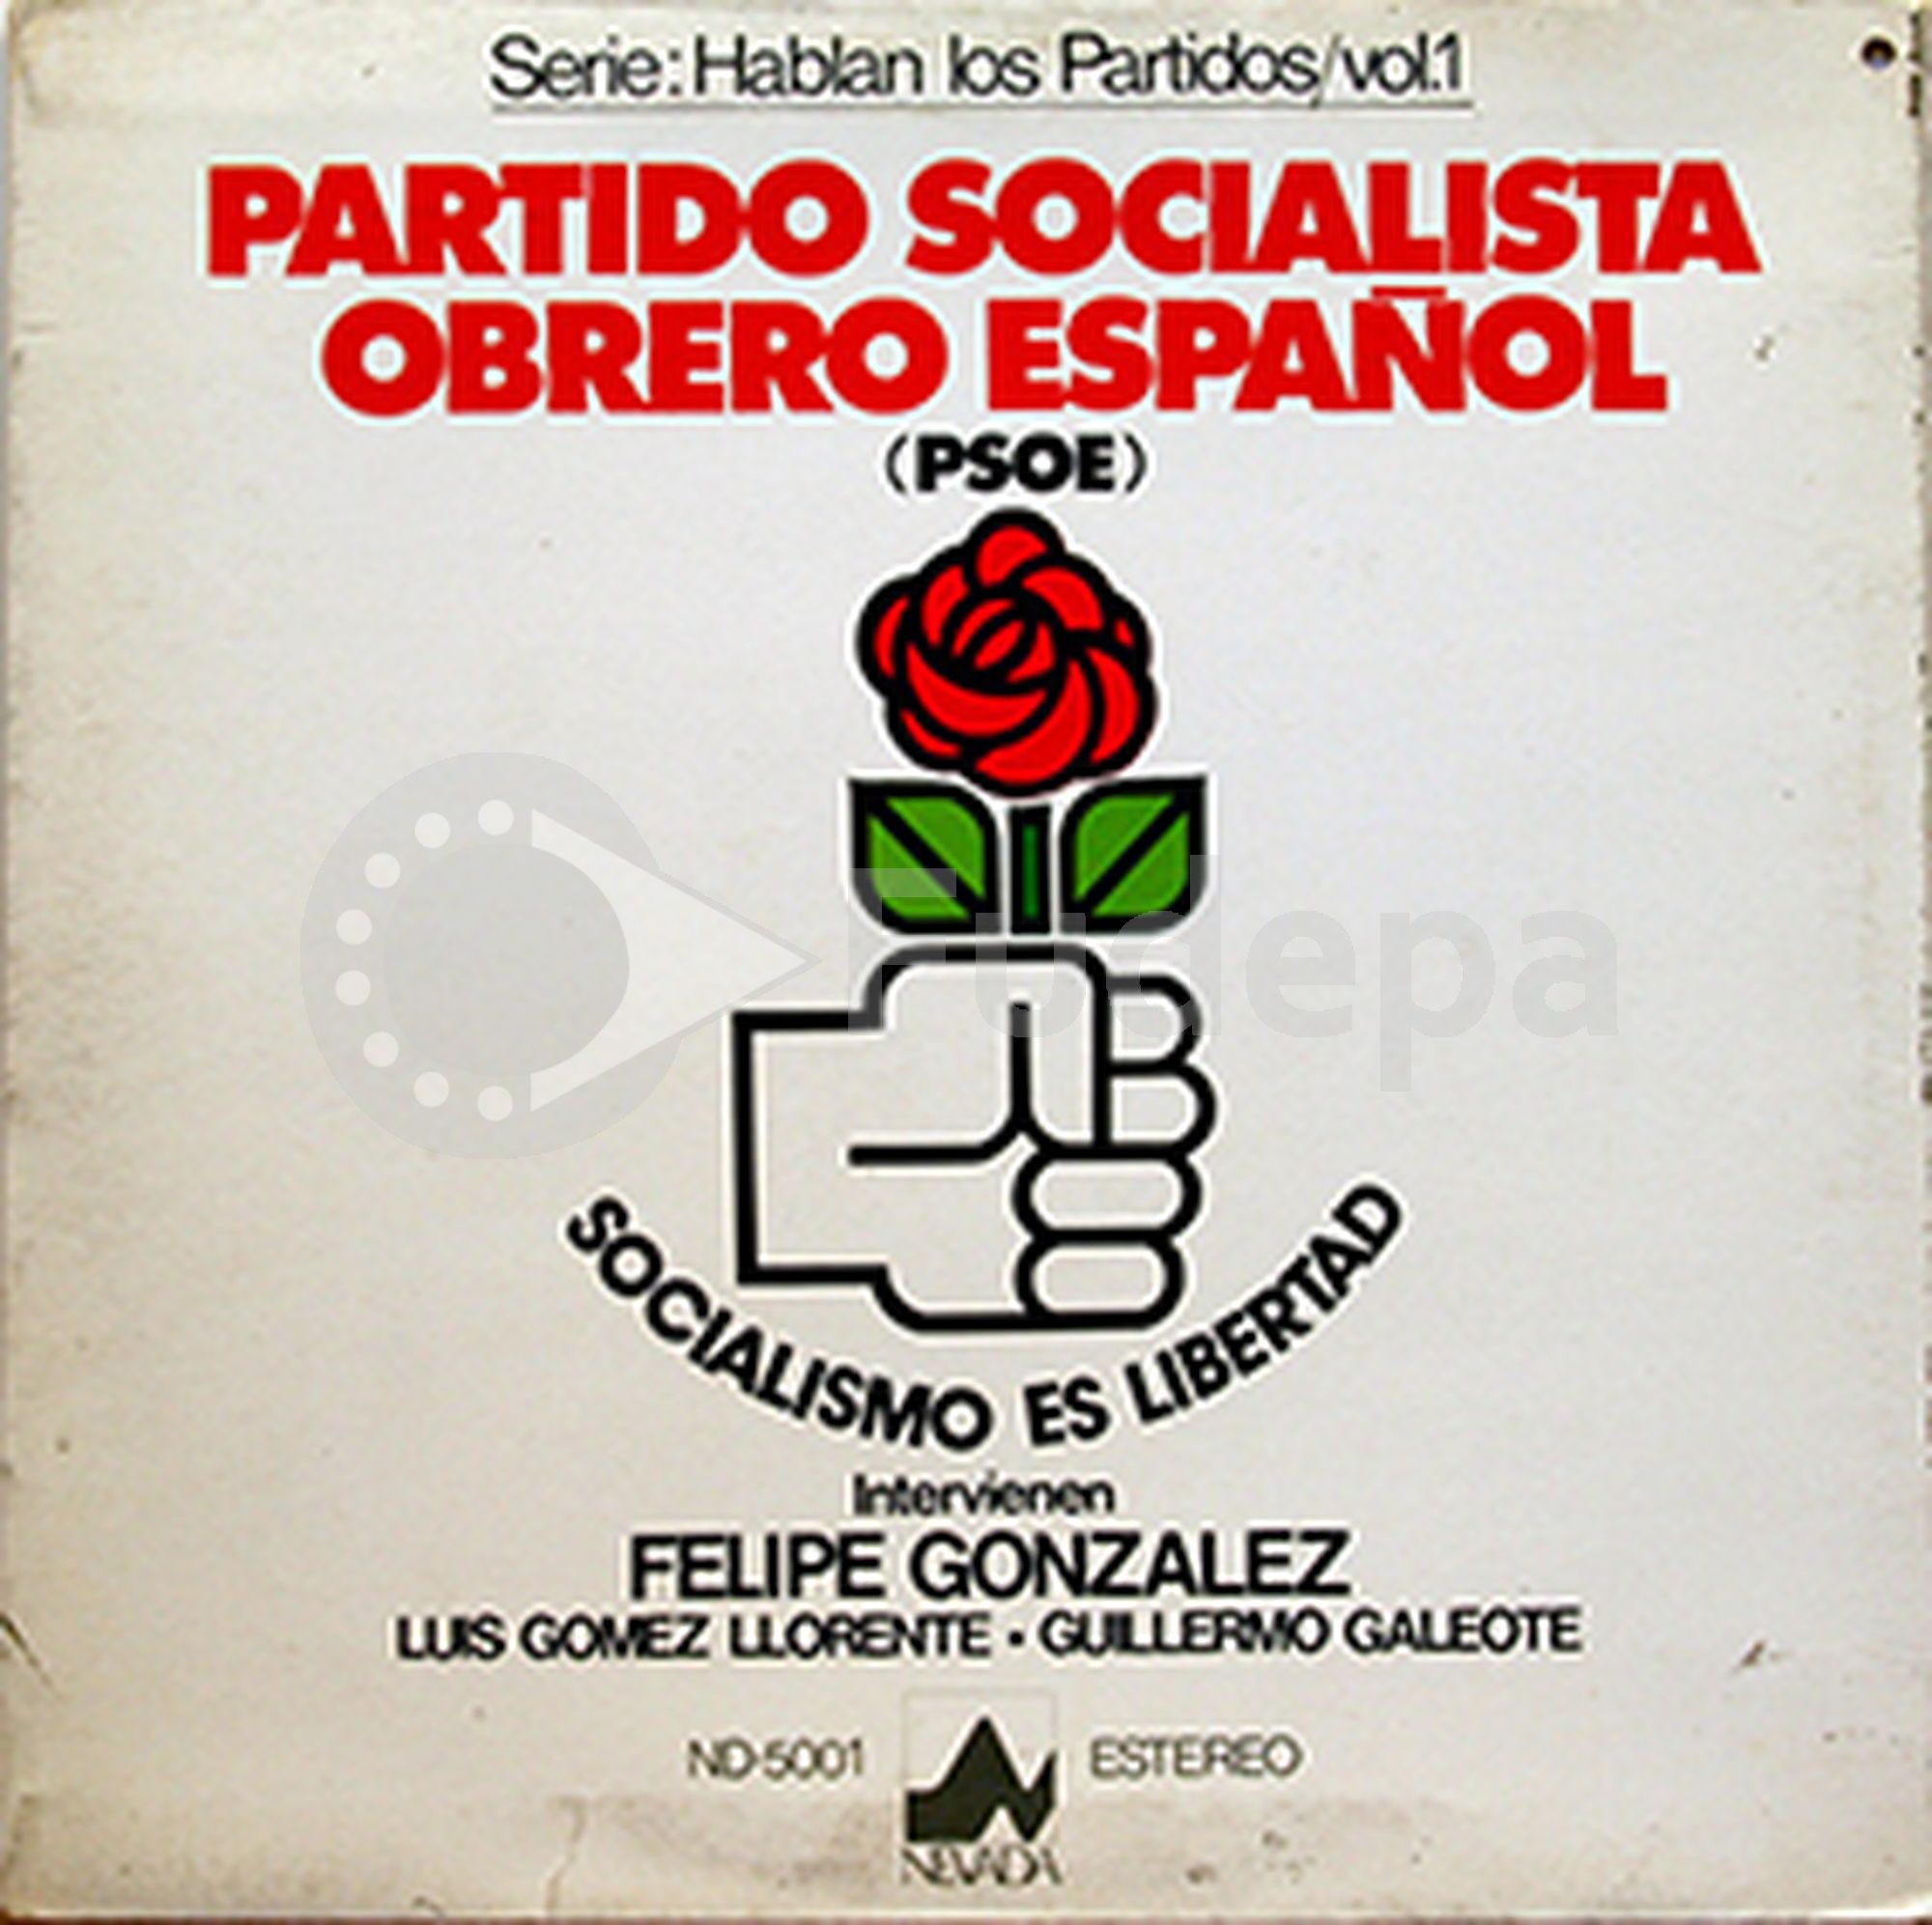 Disco de vinilo Partido Socialista Obrero Español. Socialismo es libertad. Intervienen: Felipe González, Luis Gómez Llorente y Guillermo Galeote. DV03